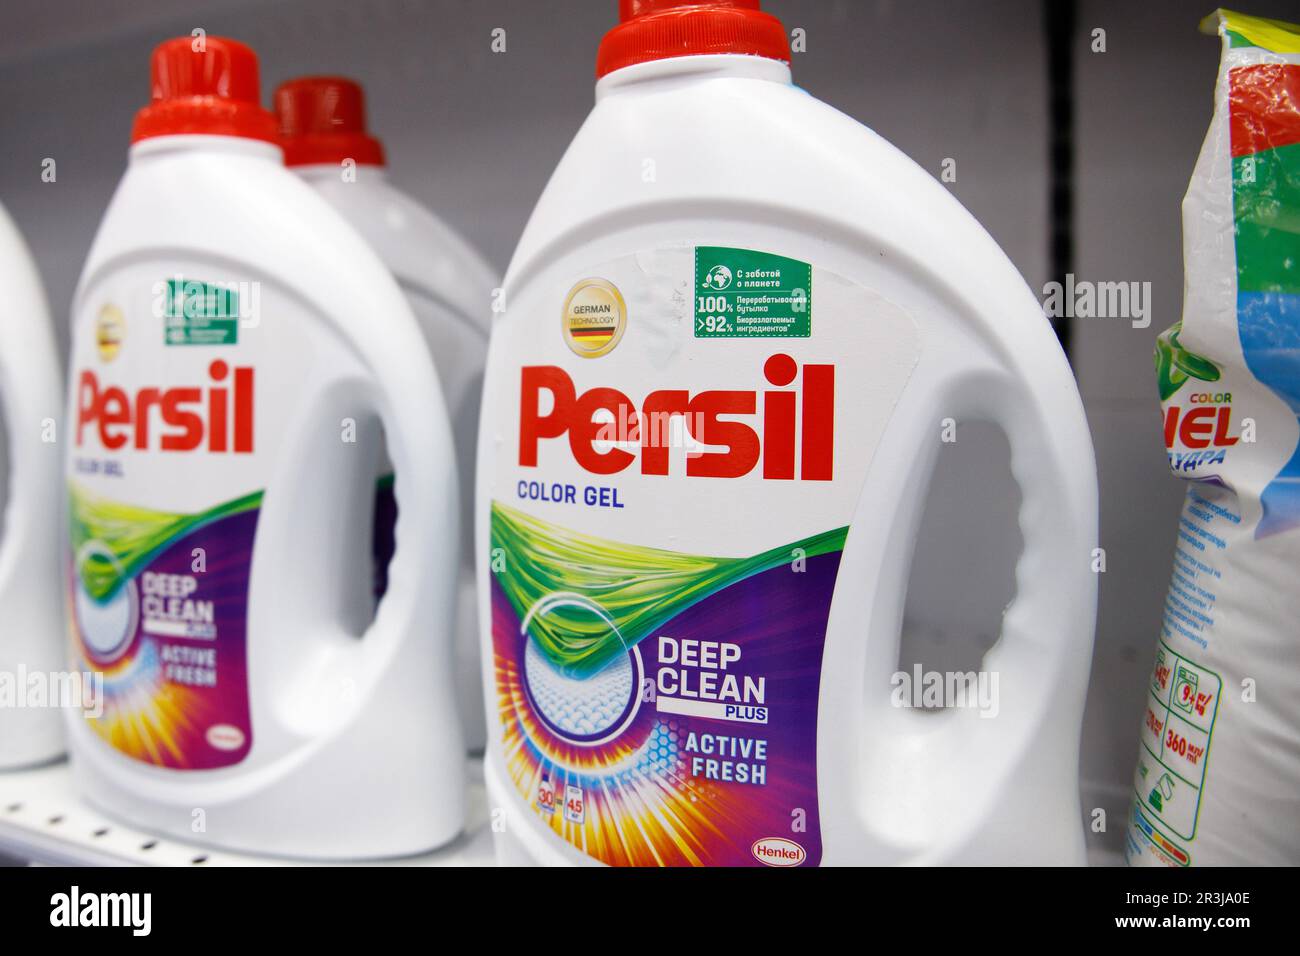 Gel de lavage pour le linge Persil sur une étagère dans un magasin Photo  Stock - Alamy